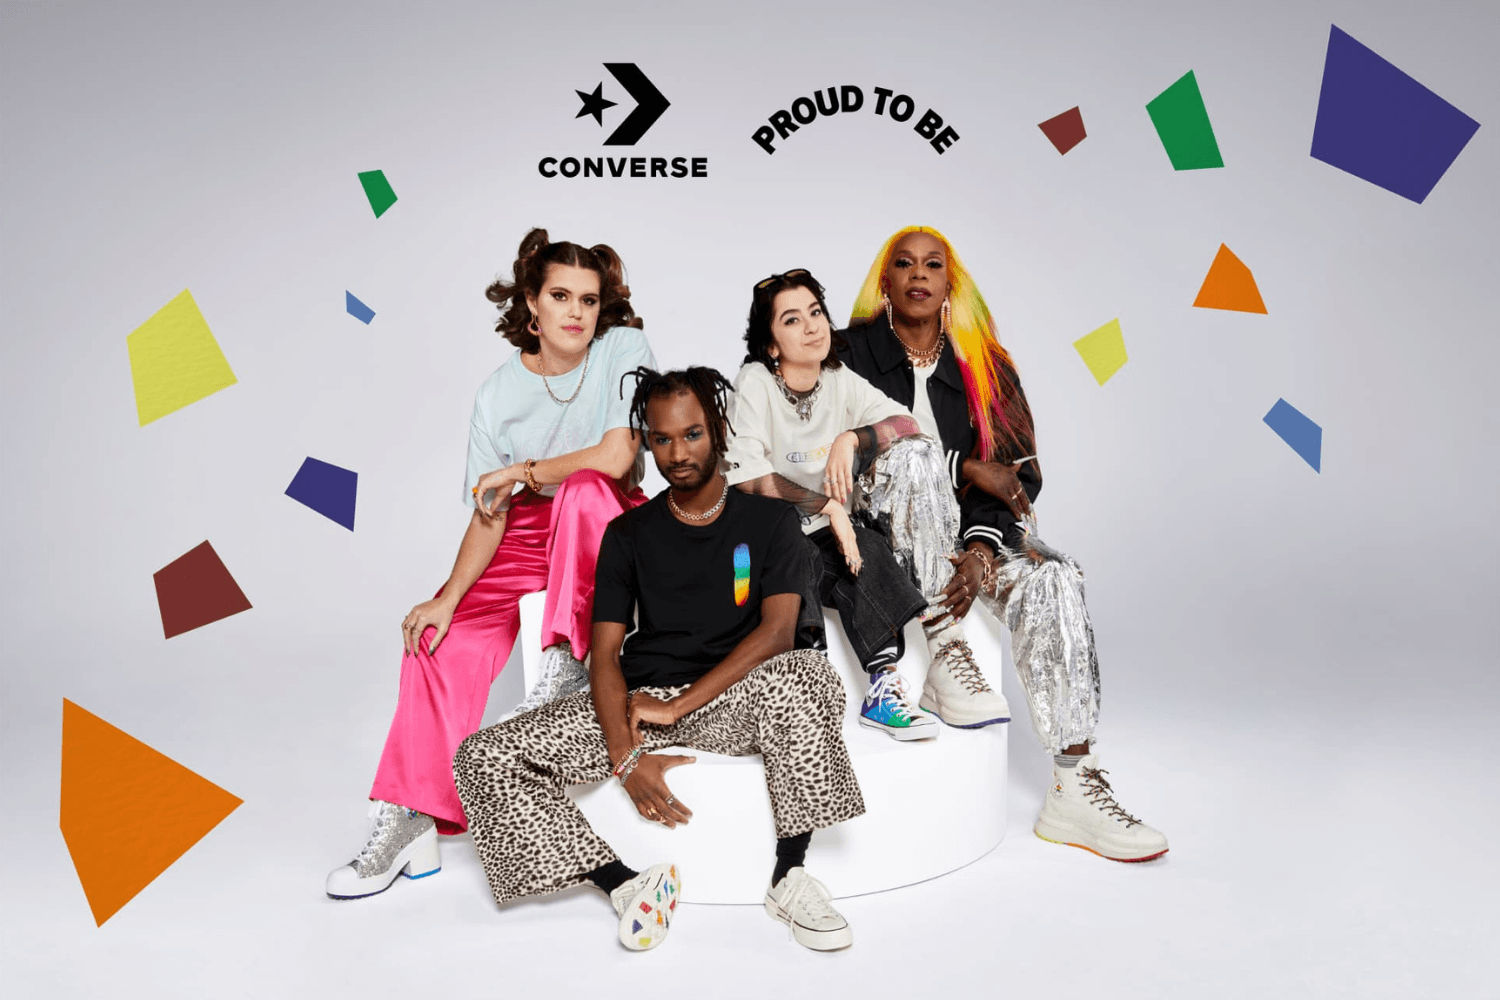 Feiere den Pride Month mit der Converse Pride Kollektion